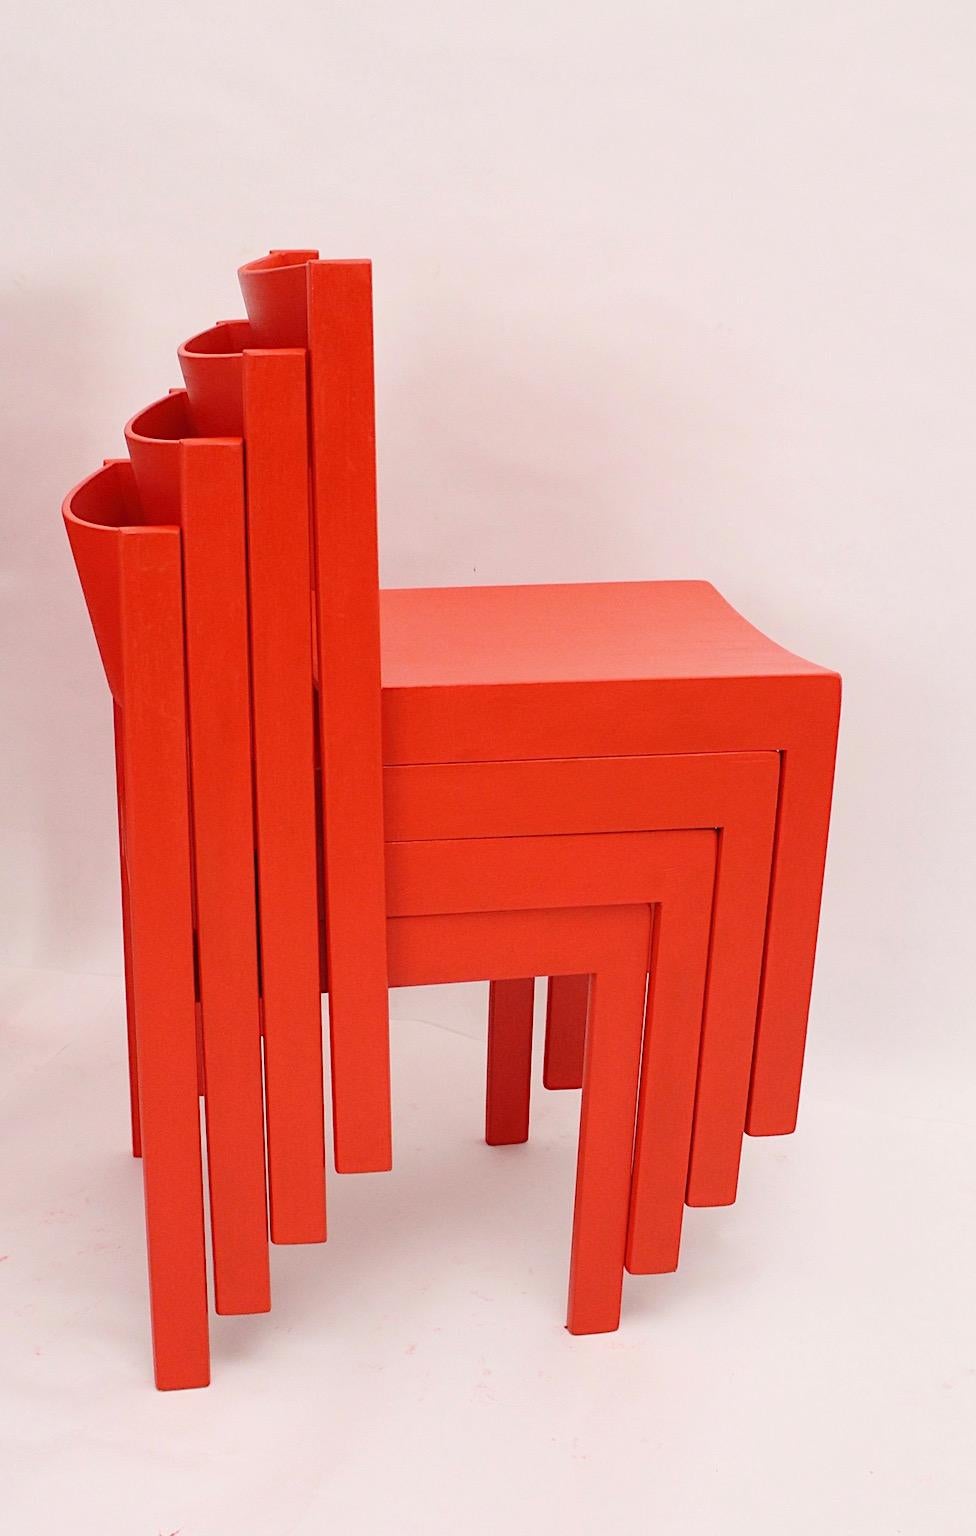 Mid-Century Modern vintage Esszimmerstühle oder Stühle aus rot lackierter Buche und Sperrholz 1950er Jahre Österreich.
Verspielt fett rote Farbe und klar geschnittenen Design beide Funktionen sind in der Erscheinung von diesen Esszimmer Stühle oder